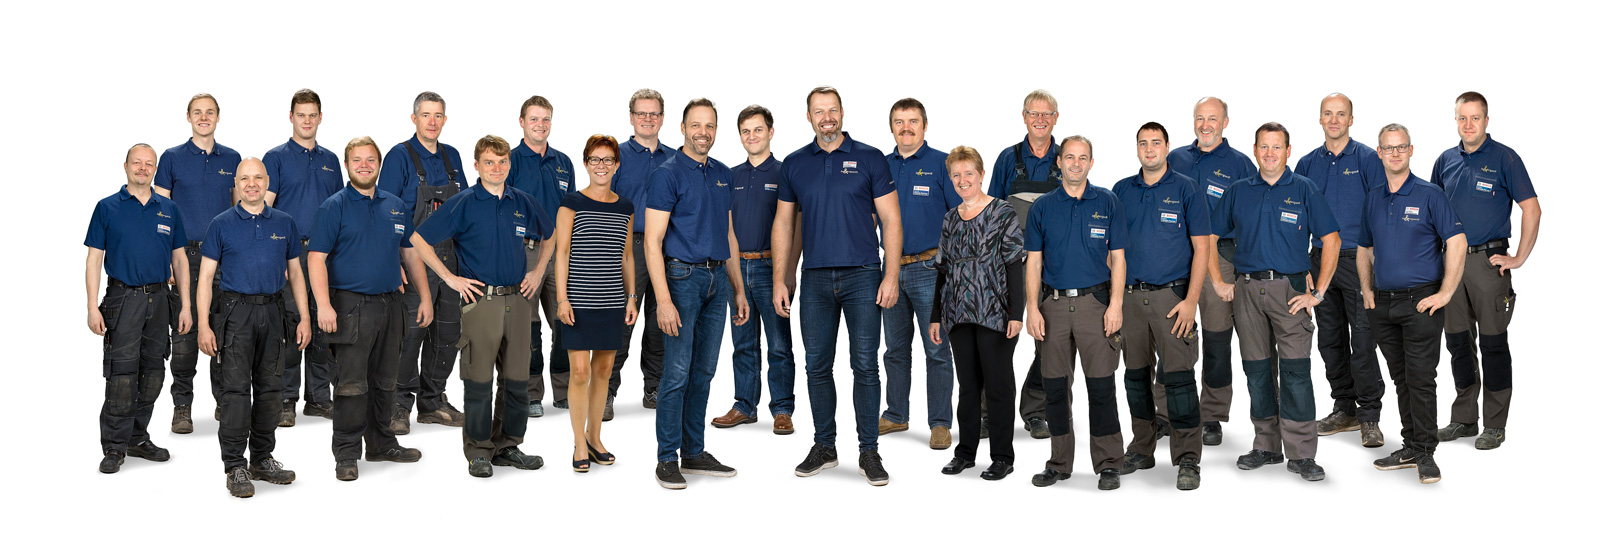 Medarbejdere hos Dam & Hovgaard i 2020